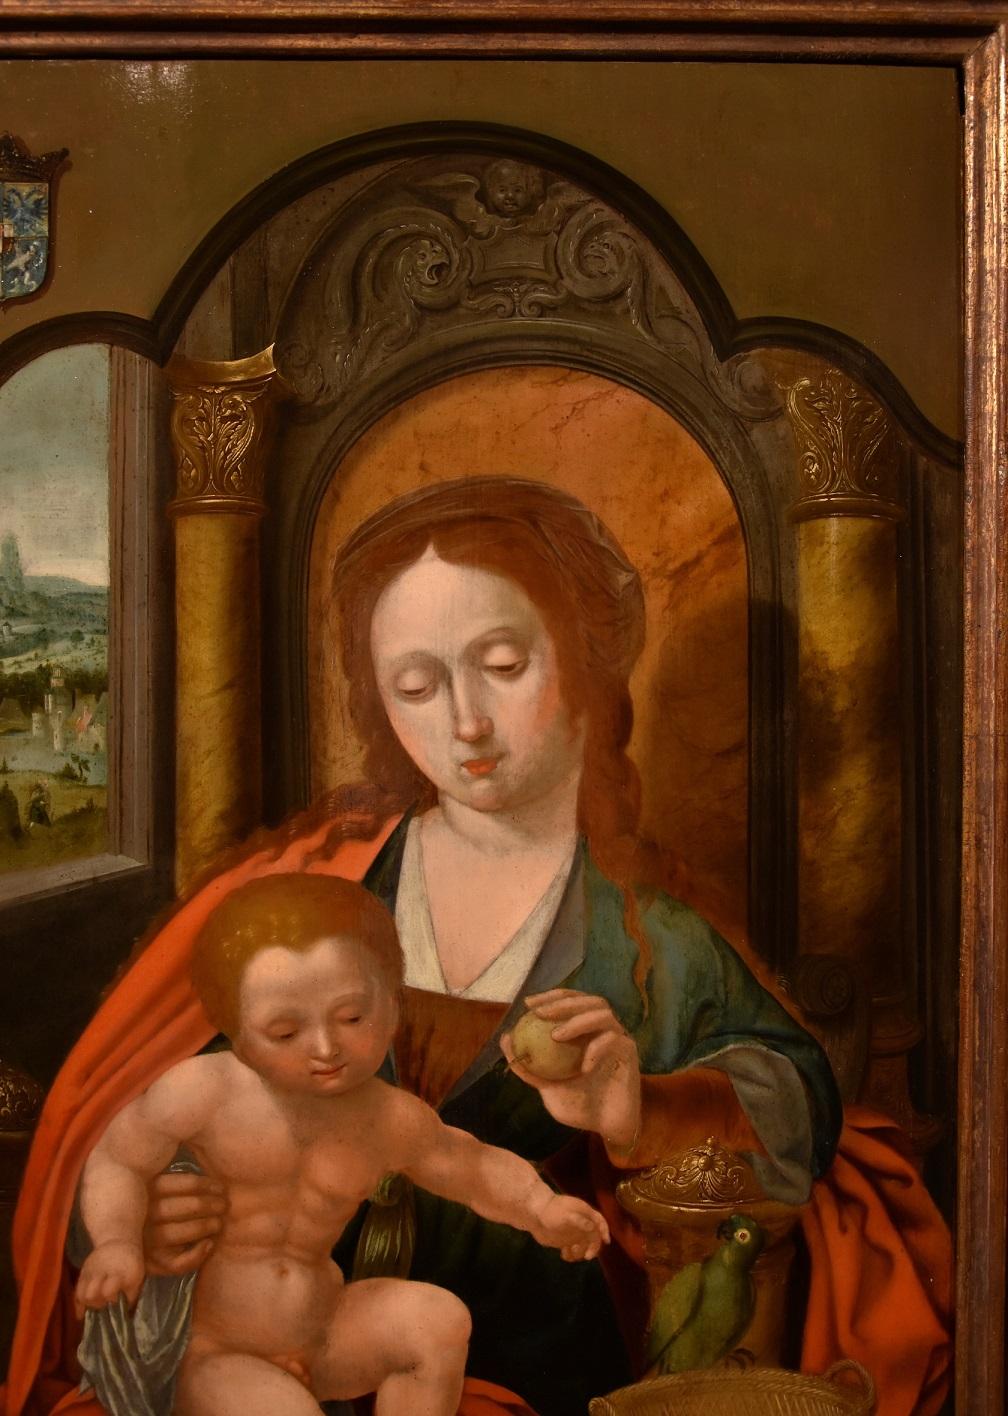 Madonna Papagei Gemälde Öl auf Tisch Alter Meister Flemish Follower Master of Parrot (Braun), Portrait Painting, von Unknown